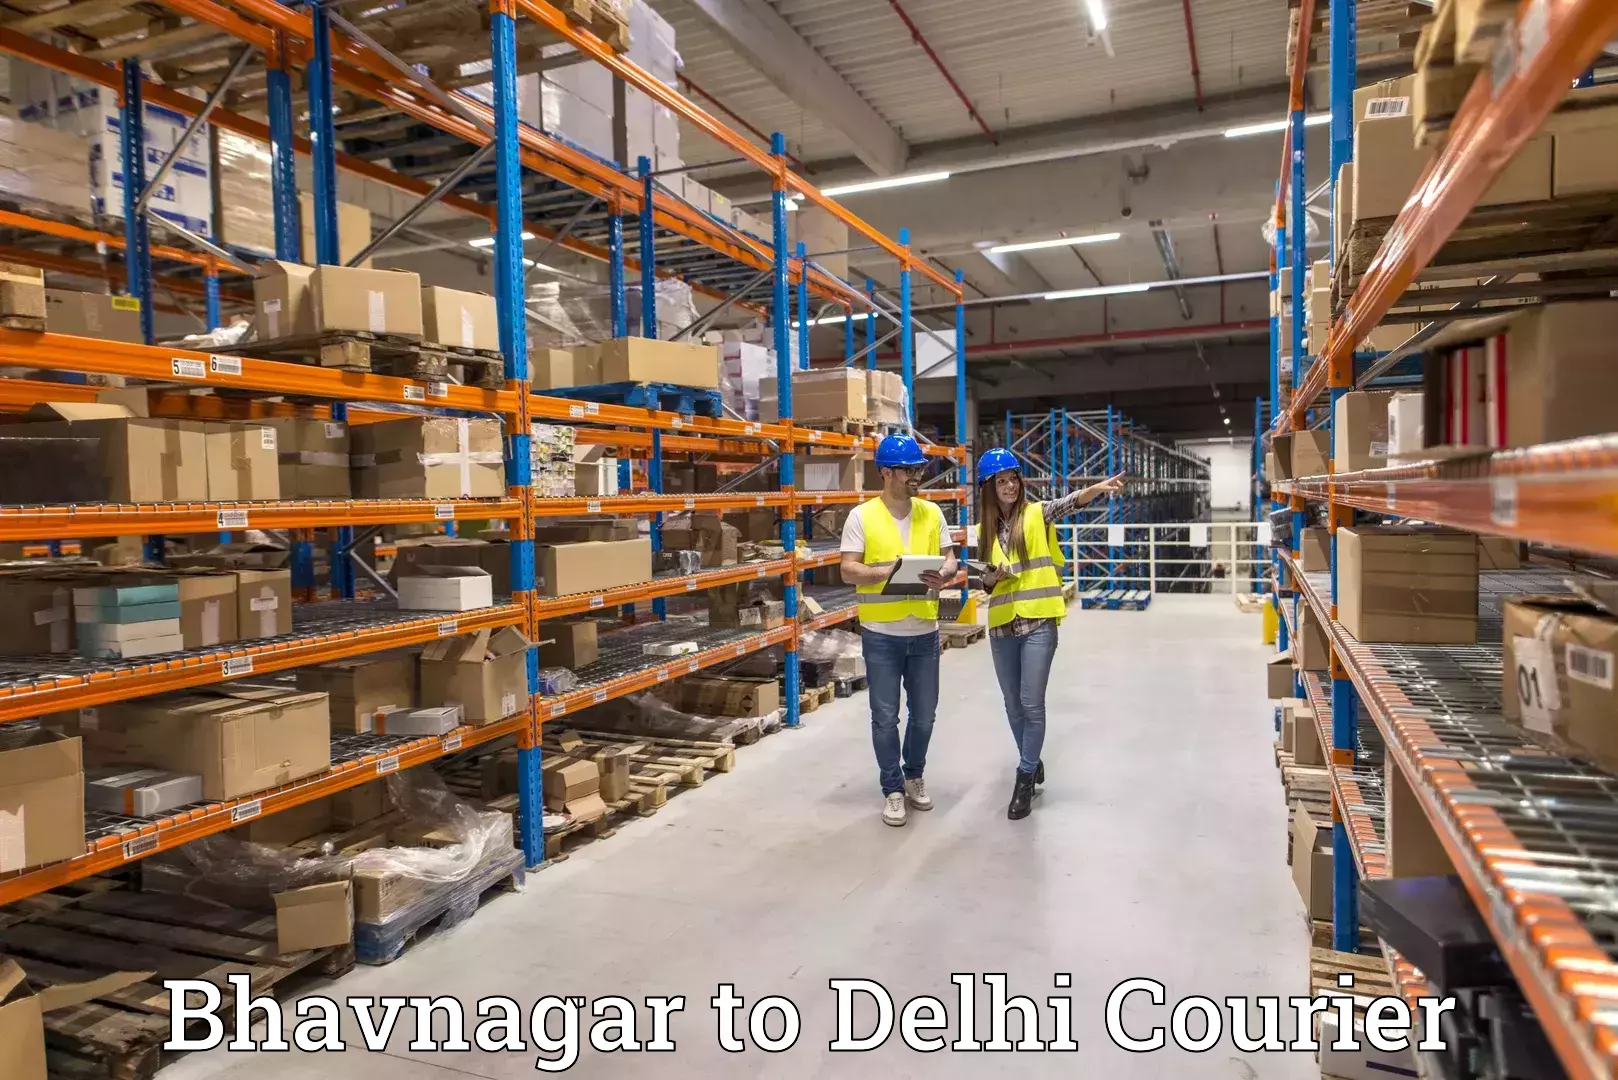 Affordable parcel service Bhavnagar to Naraina Industrial Estate